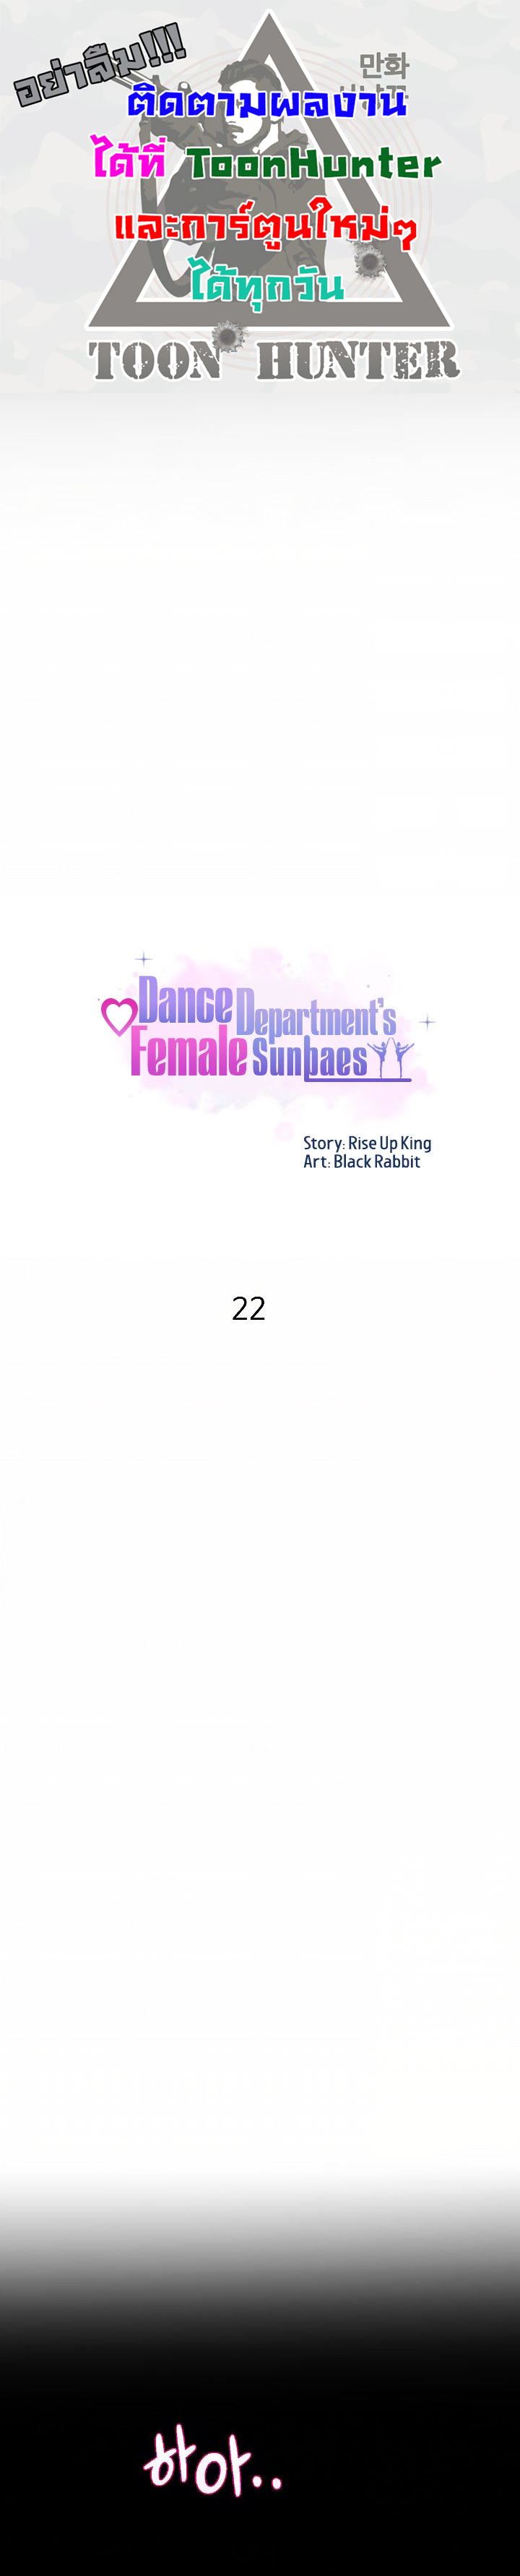 Dance Department’s Female Sunbaes 22 (1)